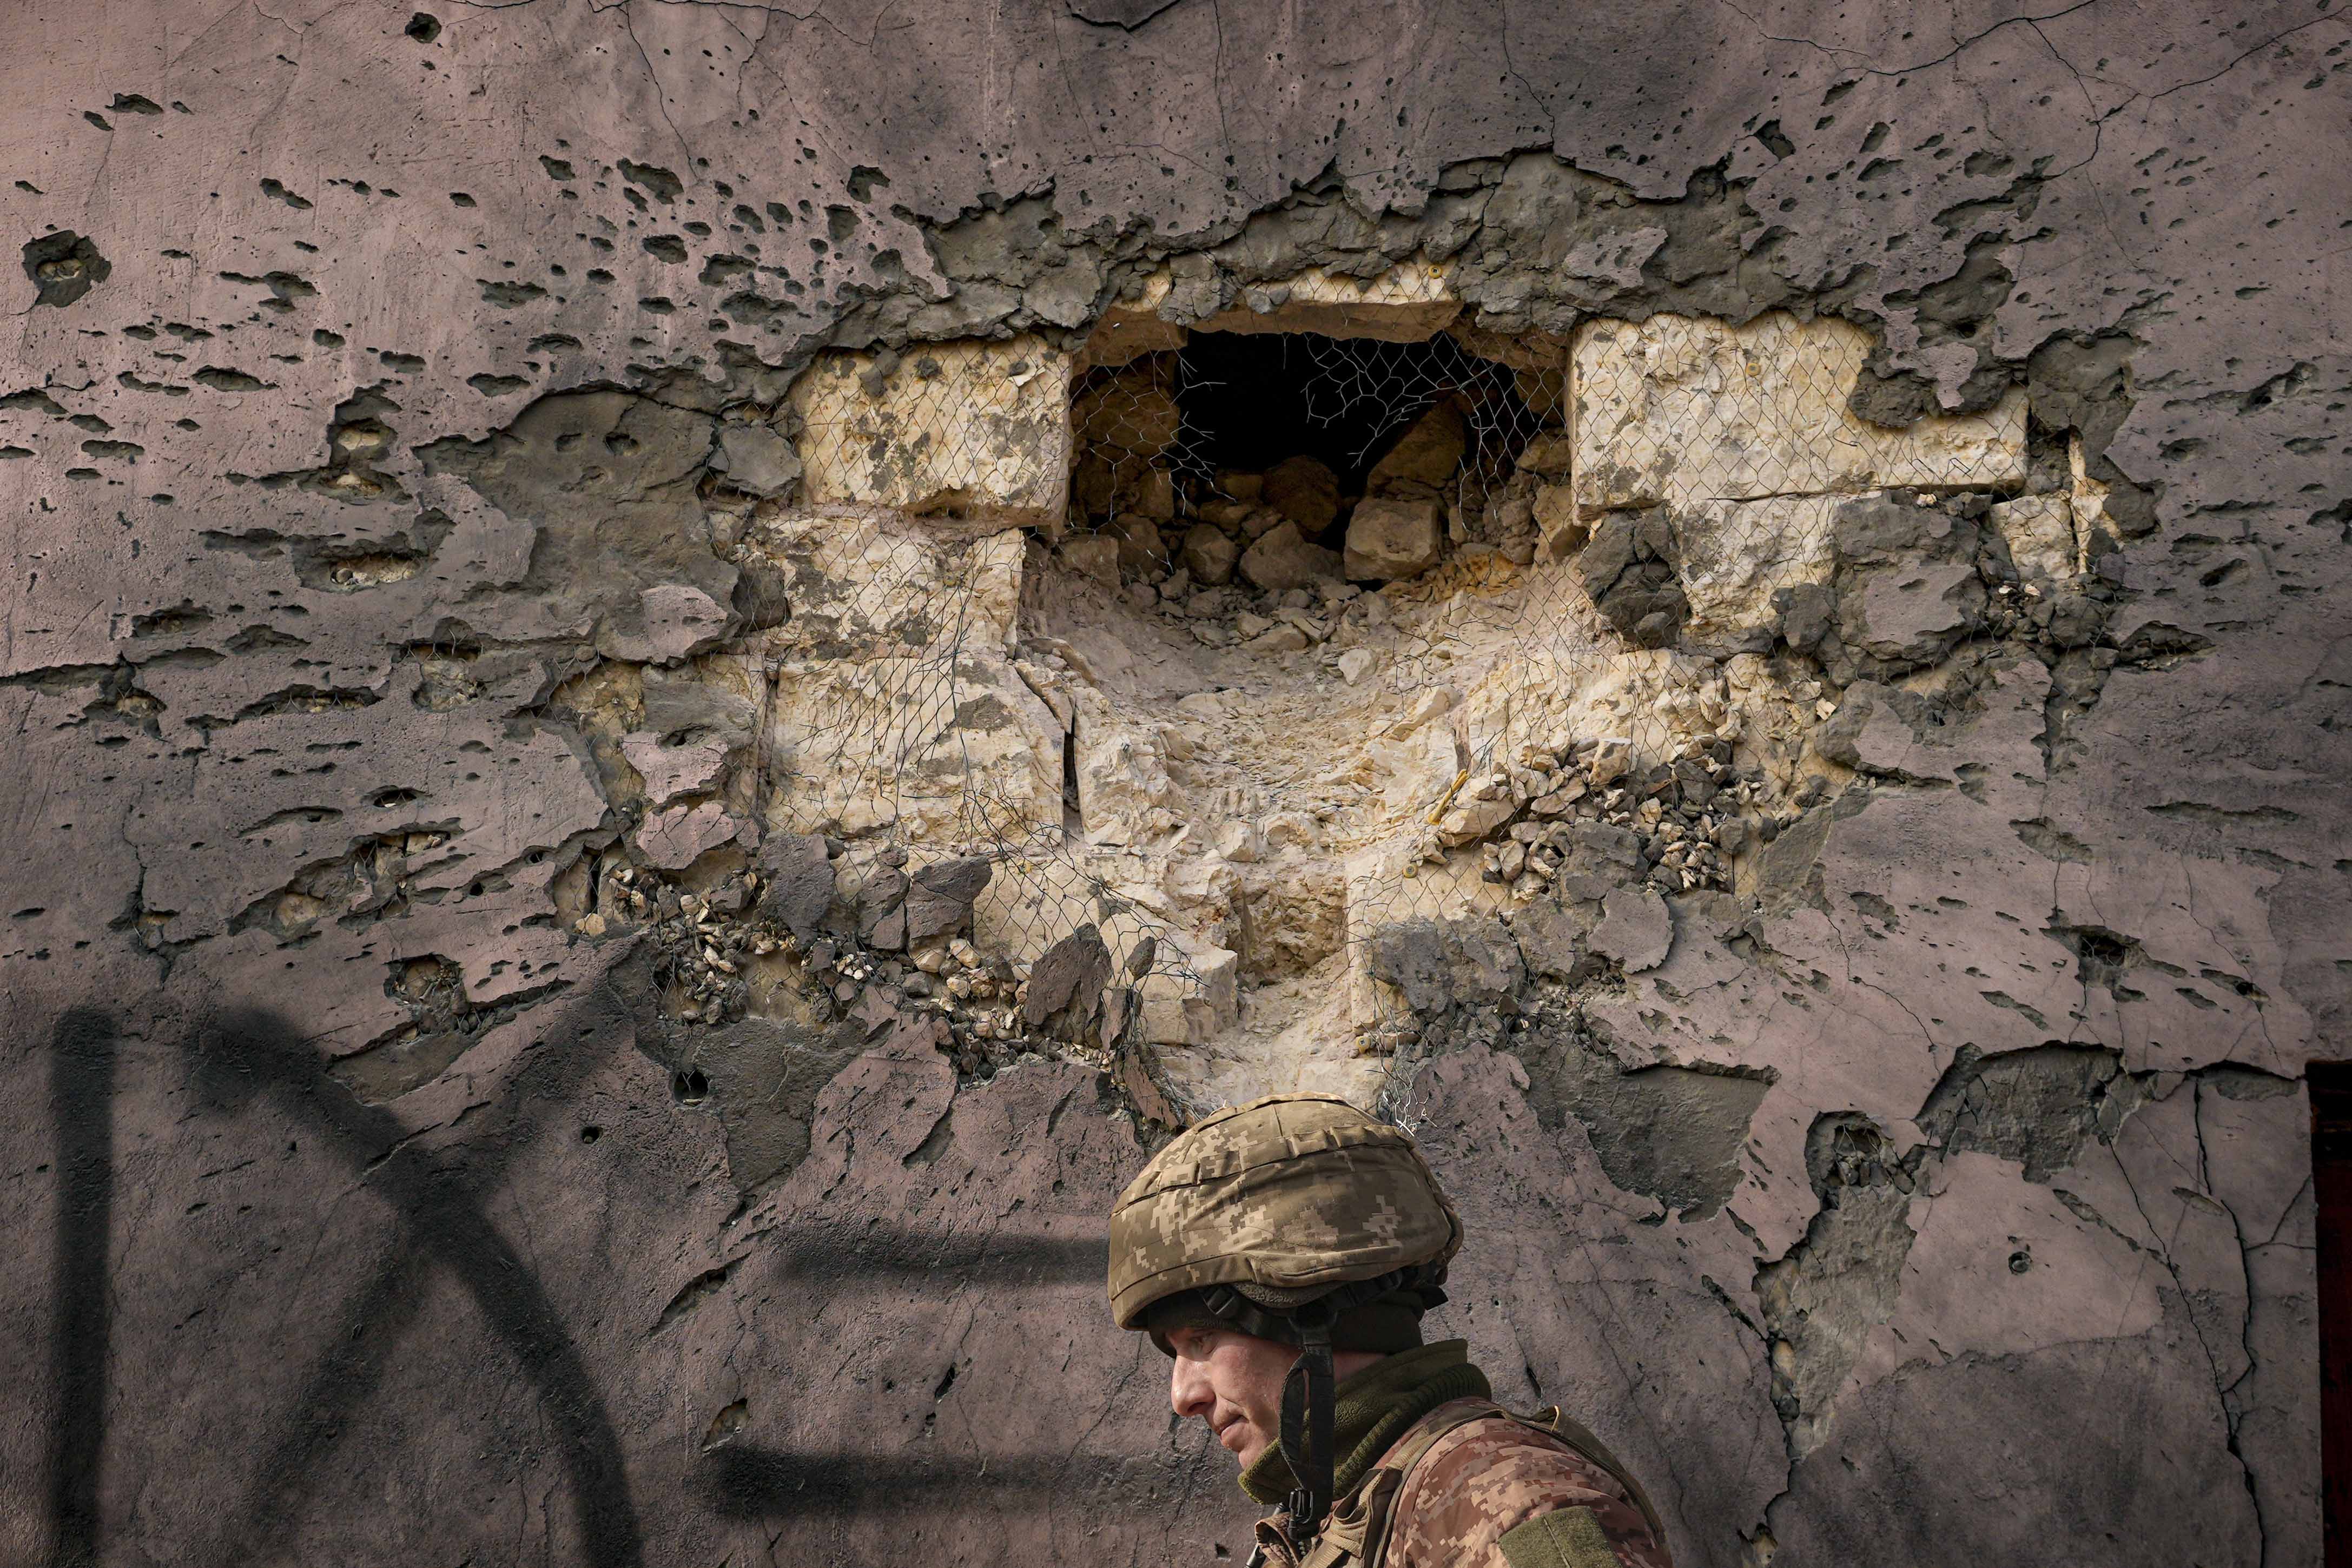 A Ukrainian serviceman walks by a building hit by shelling in Krymske, Luhansk region, in eastern Ukraine, February 19, 2022.